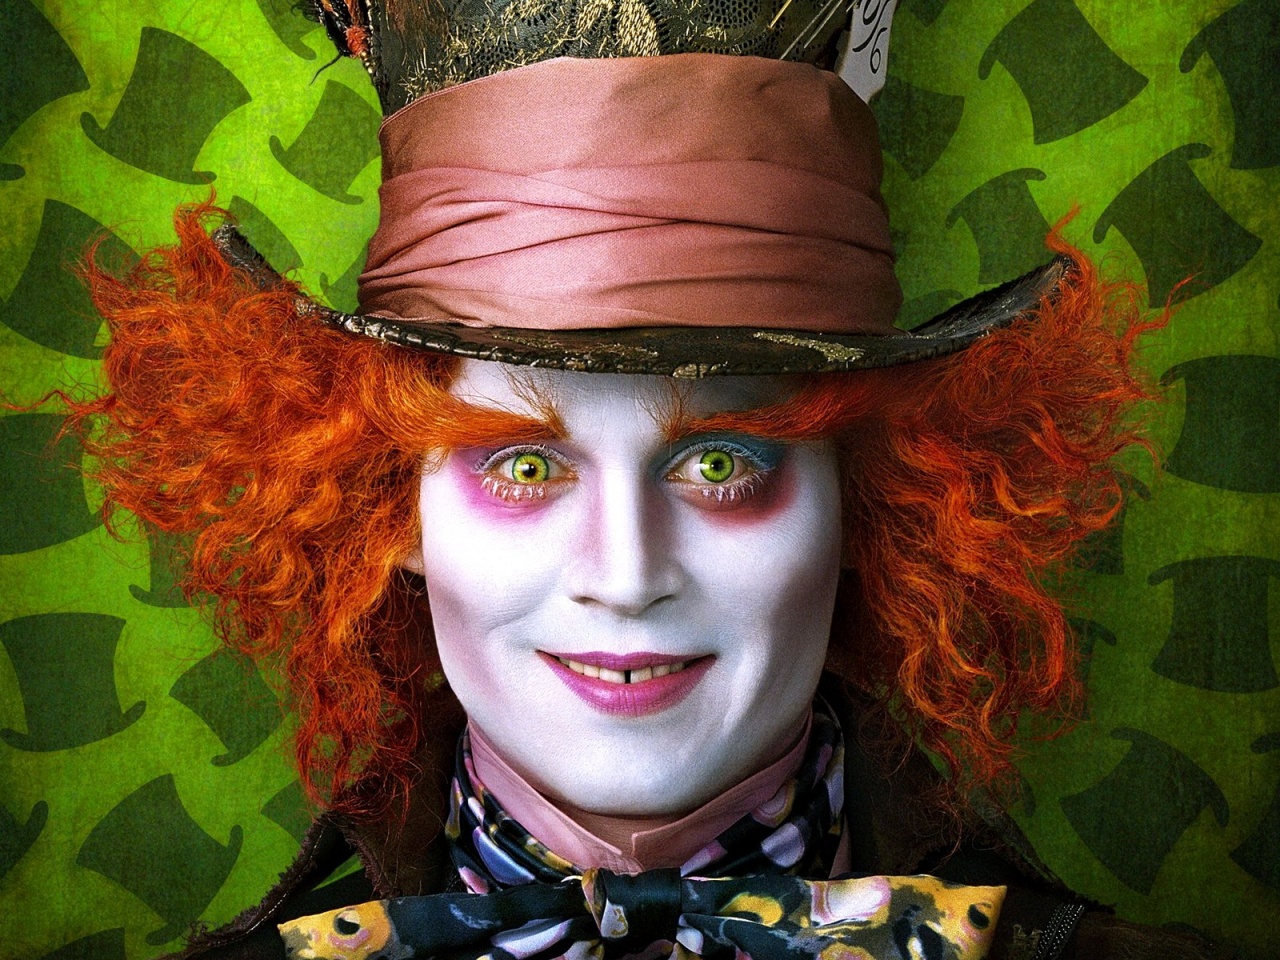 Johnny Depp - The Mad Hatter, Alice in Wonderland